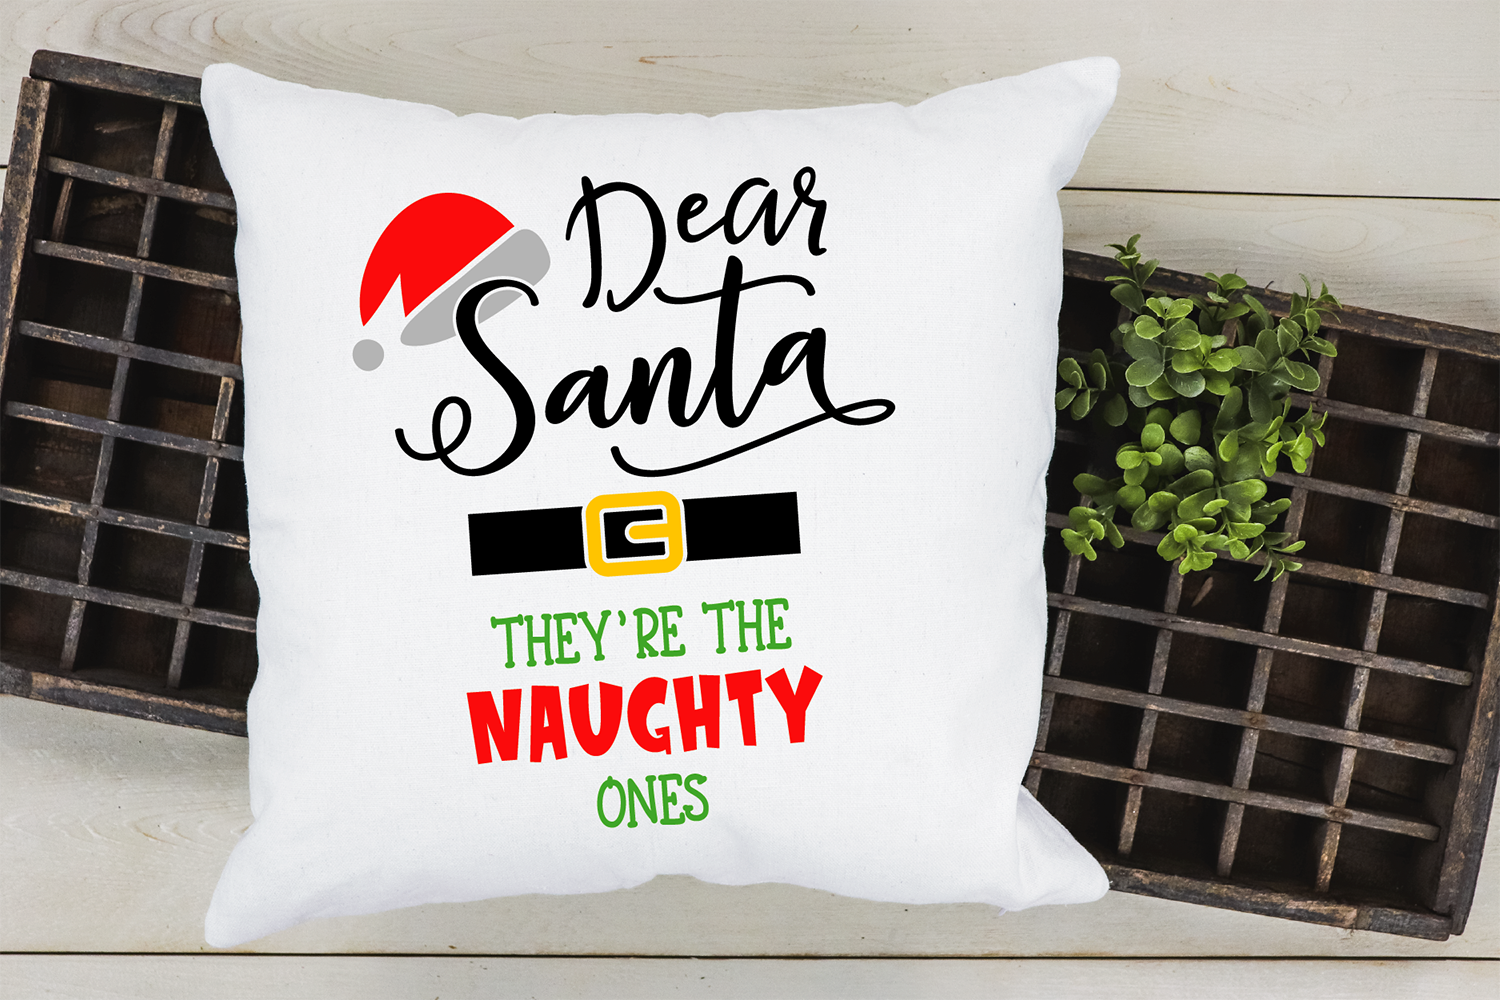 Santa's Naughty List (VR)